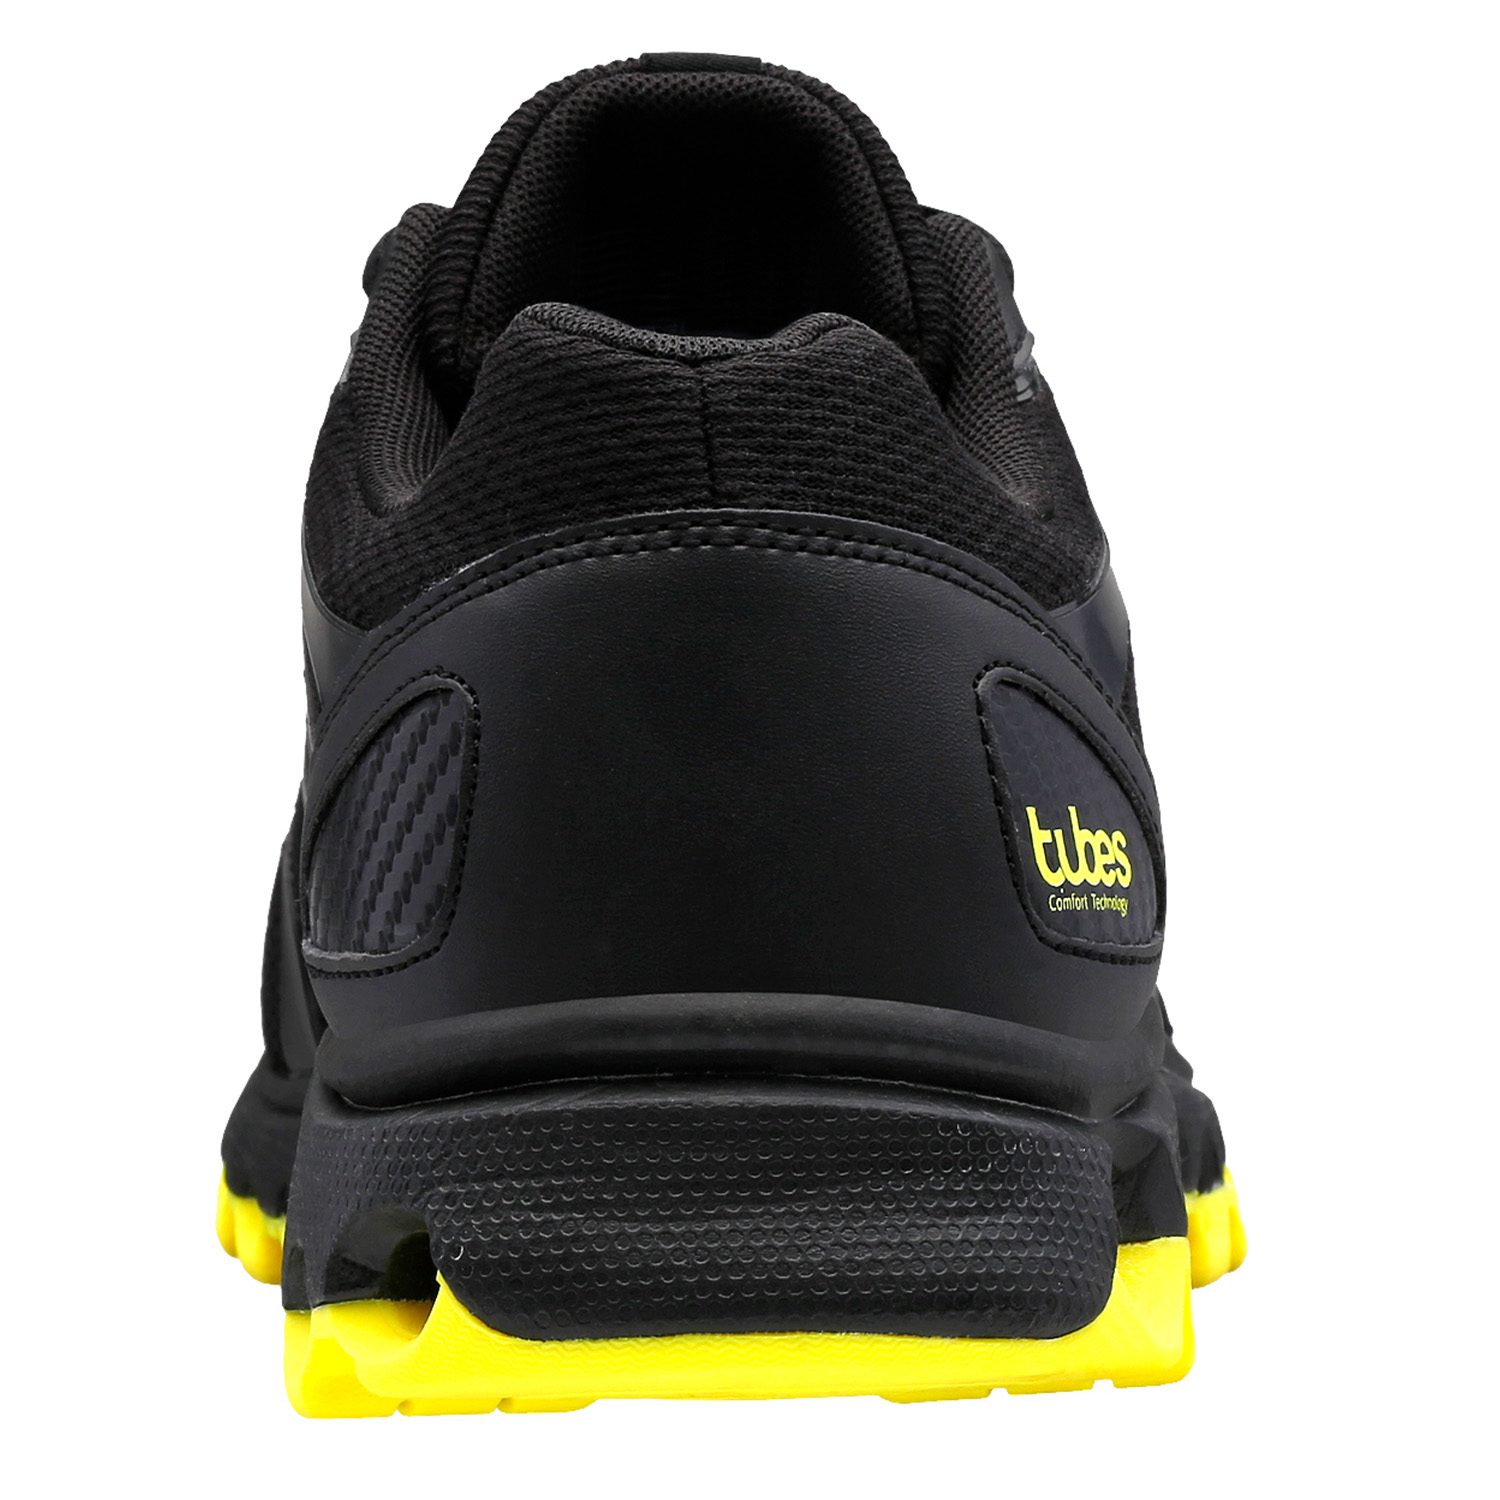 K-SWISS TUBES Comfort 200 Herren Sneaker Sportschuh 07112 Schwarz/gelb